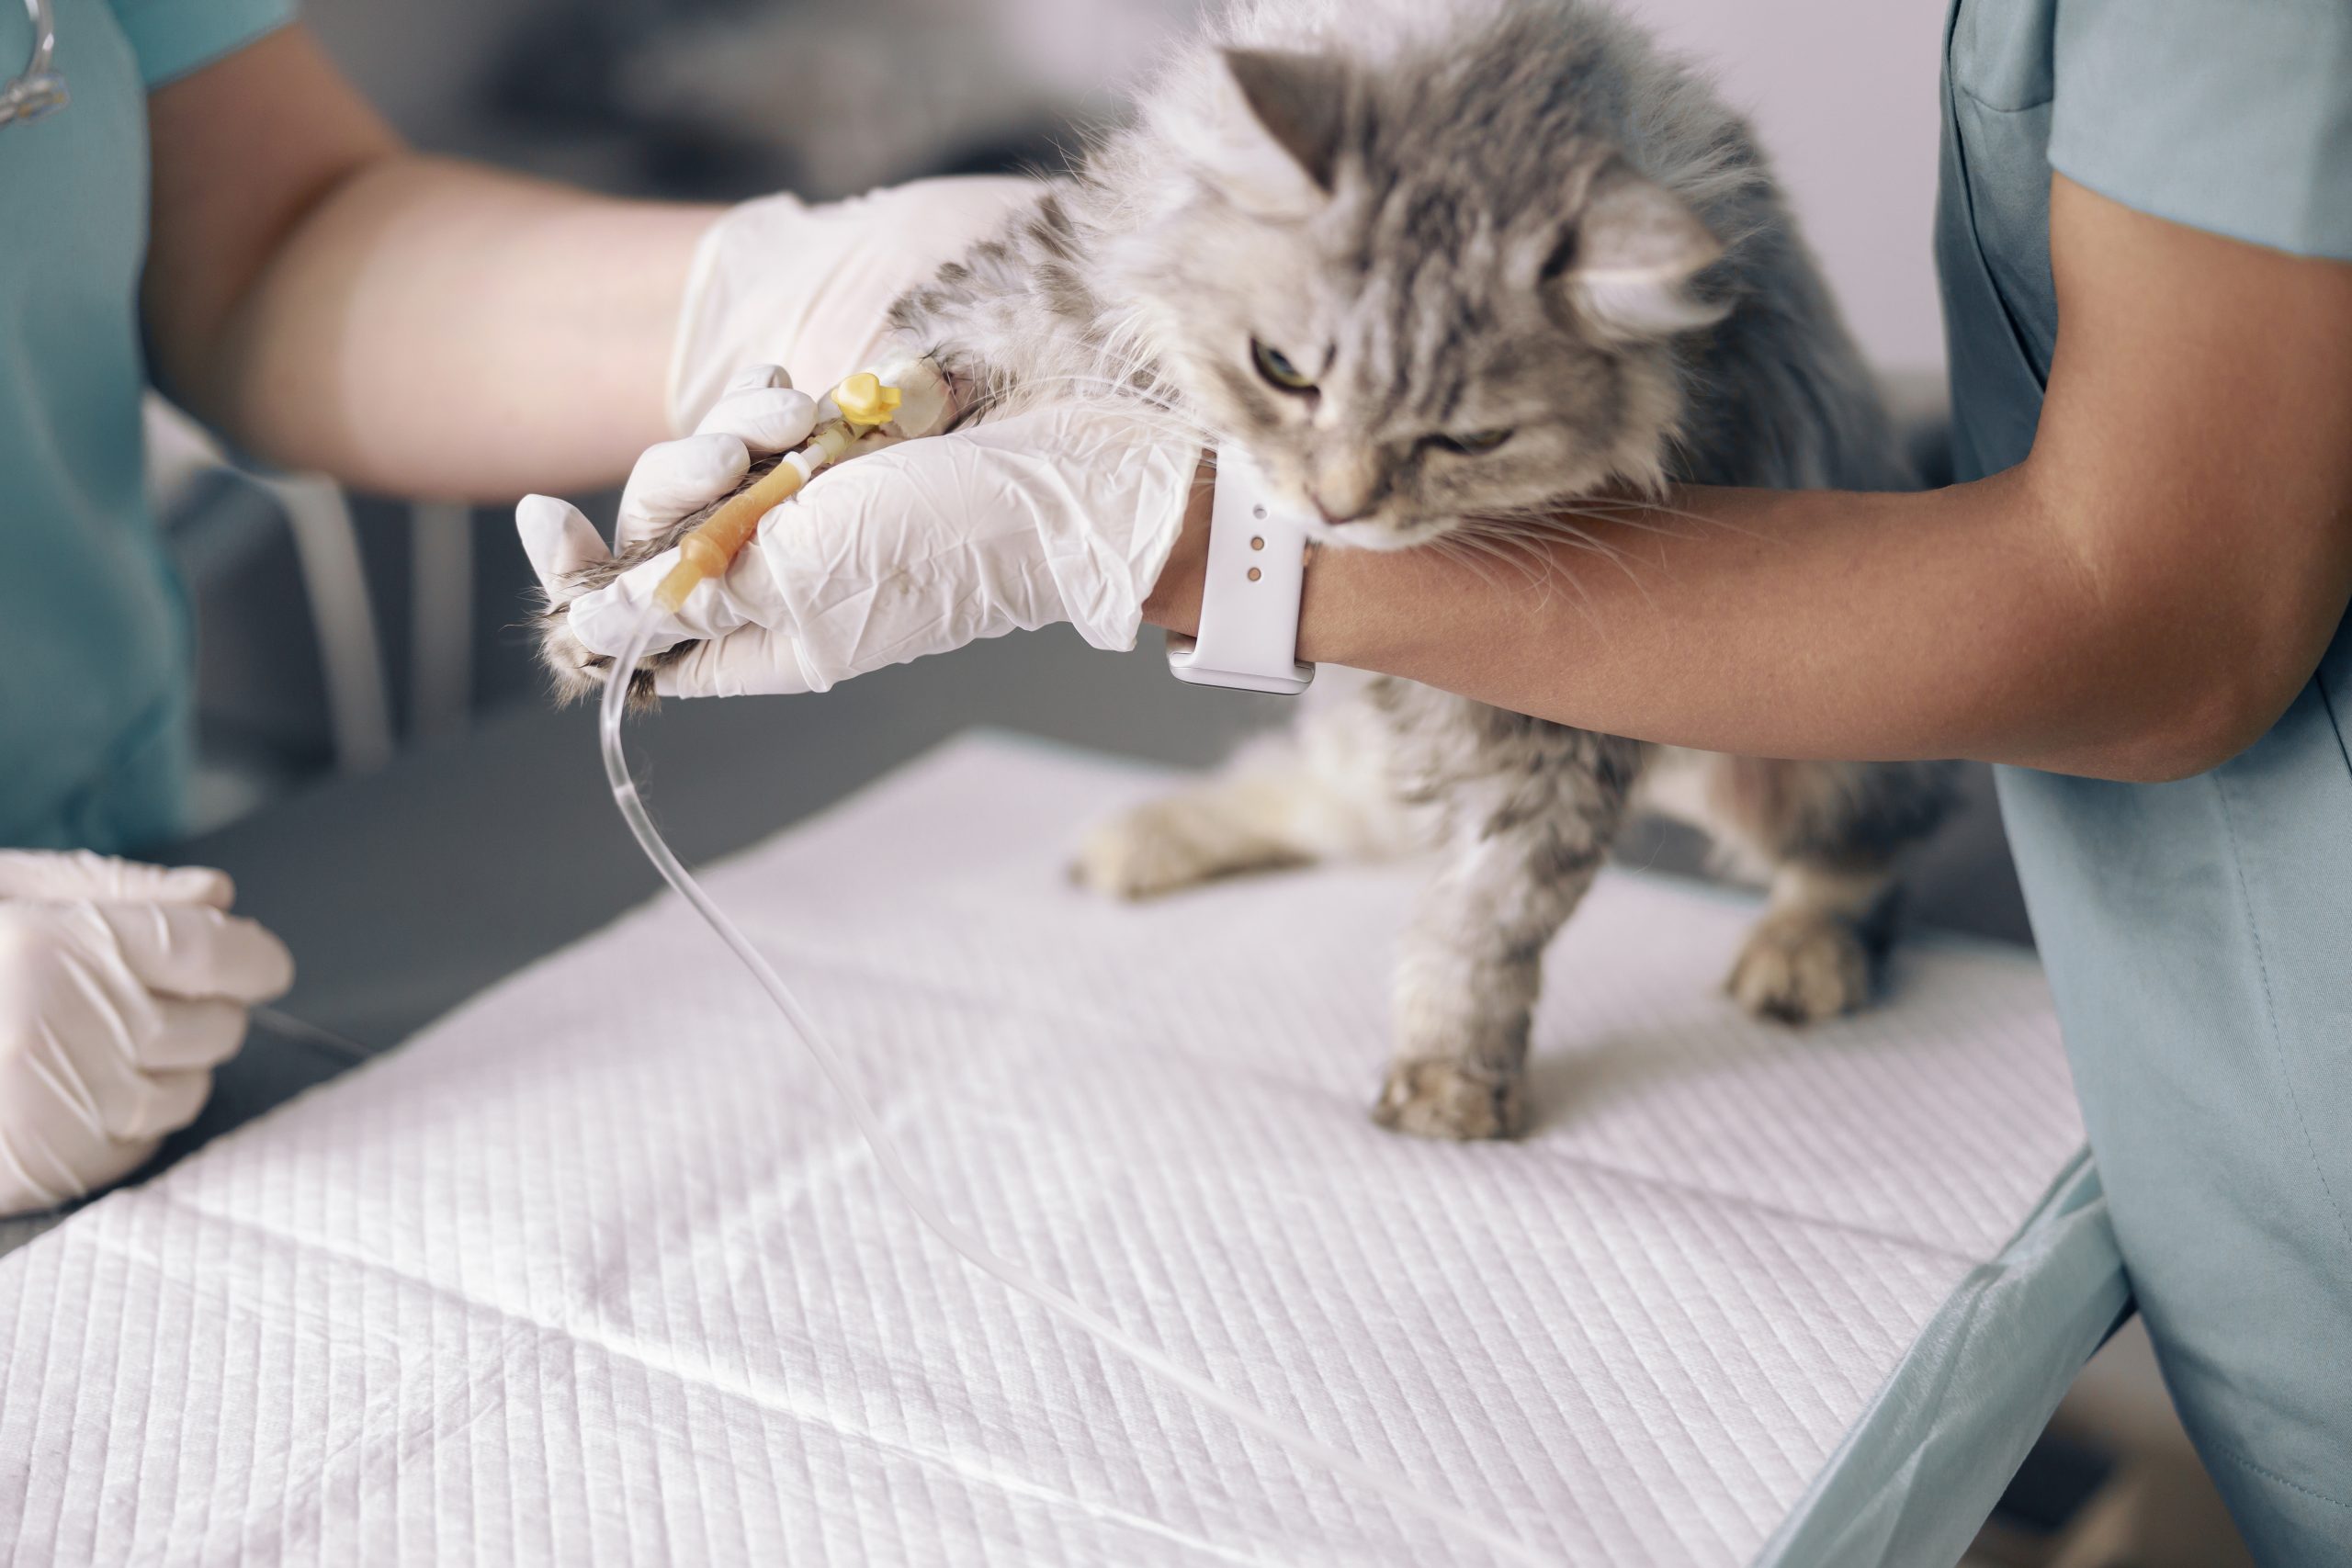 Tratamiento inmunosimulante de poliprenil de gatos con peritonitis infecciosa felina presuntiva no efusiva en un estudio de campo